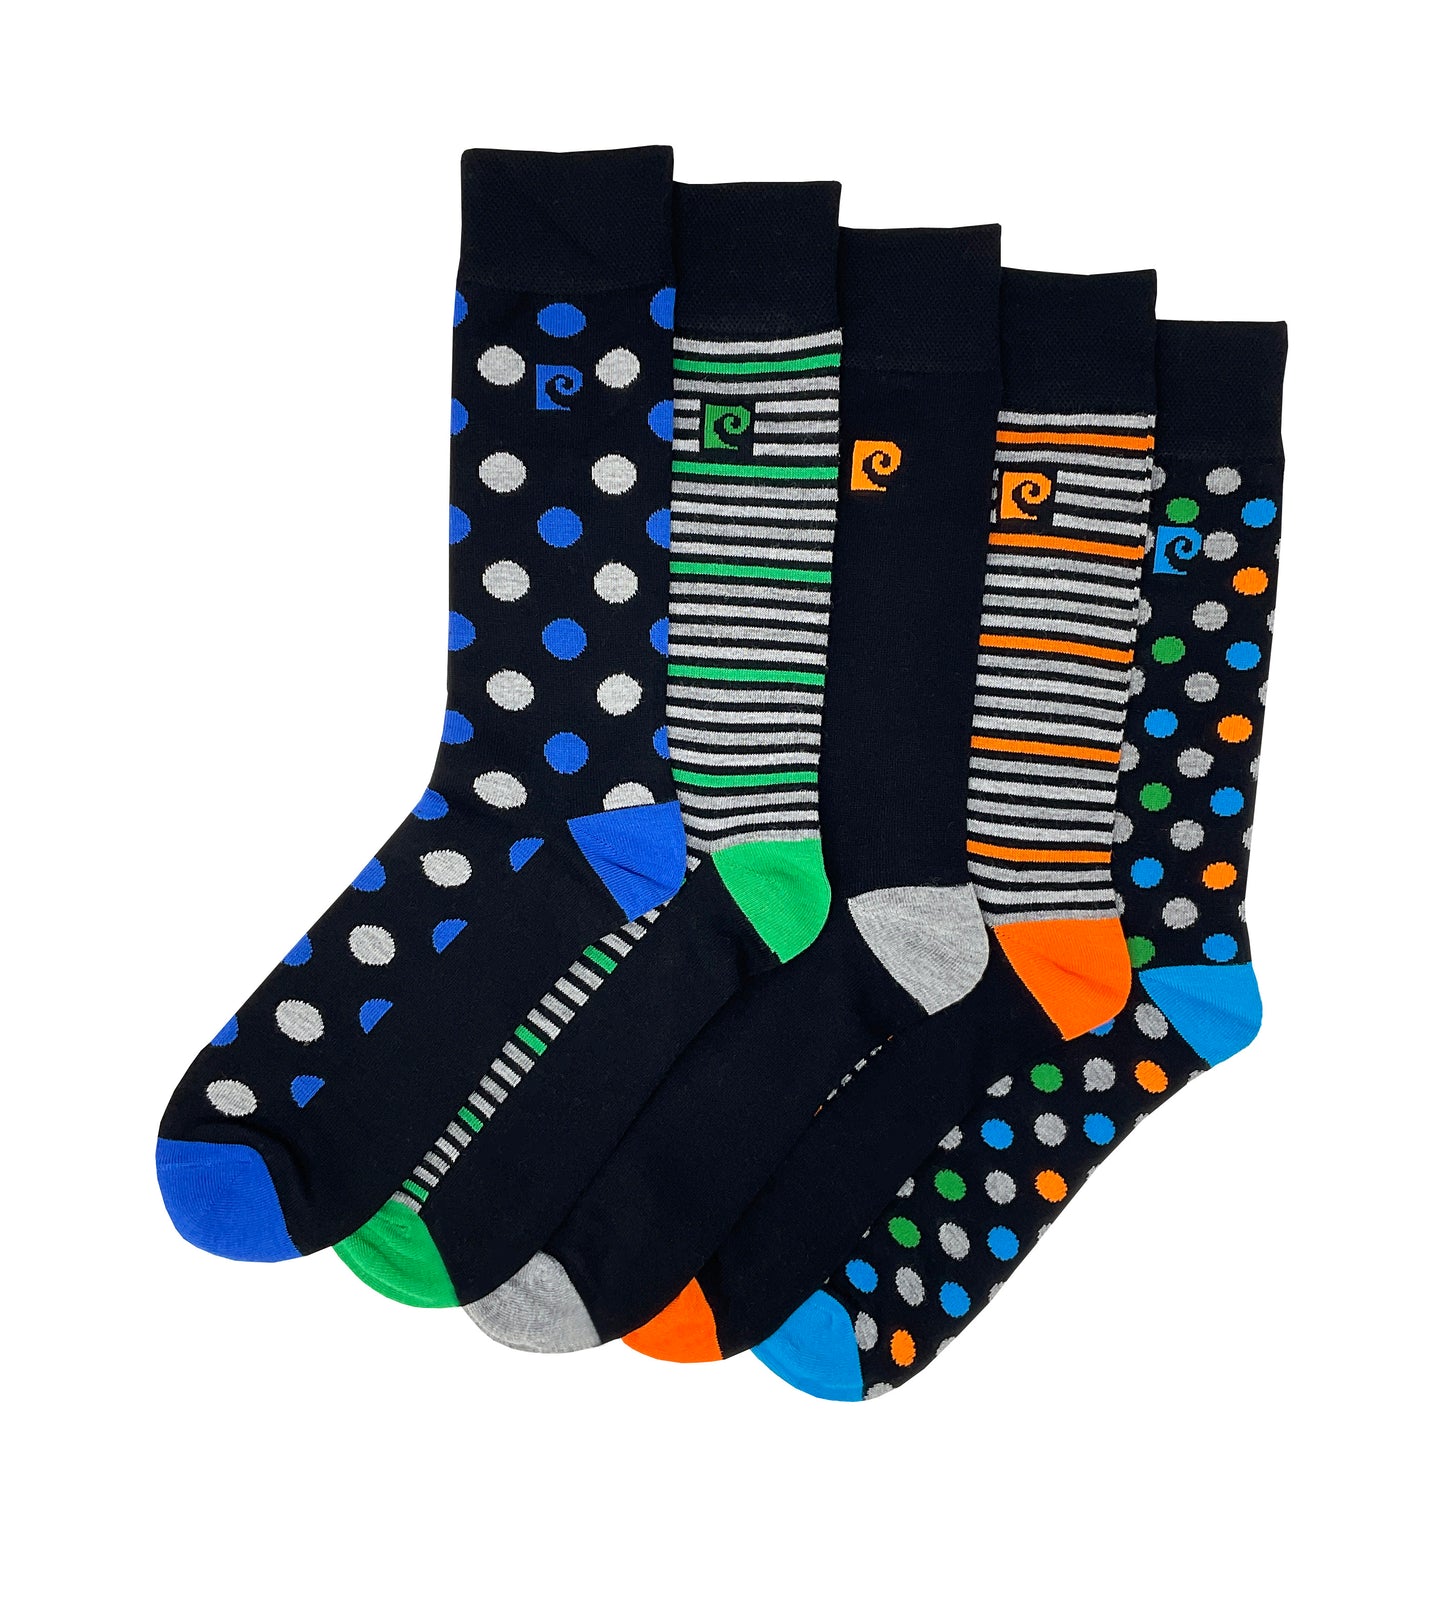 Pierre Cardin 5 Pack Bamboo Socks - Striped Heel & Toe